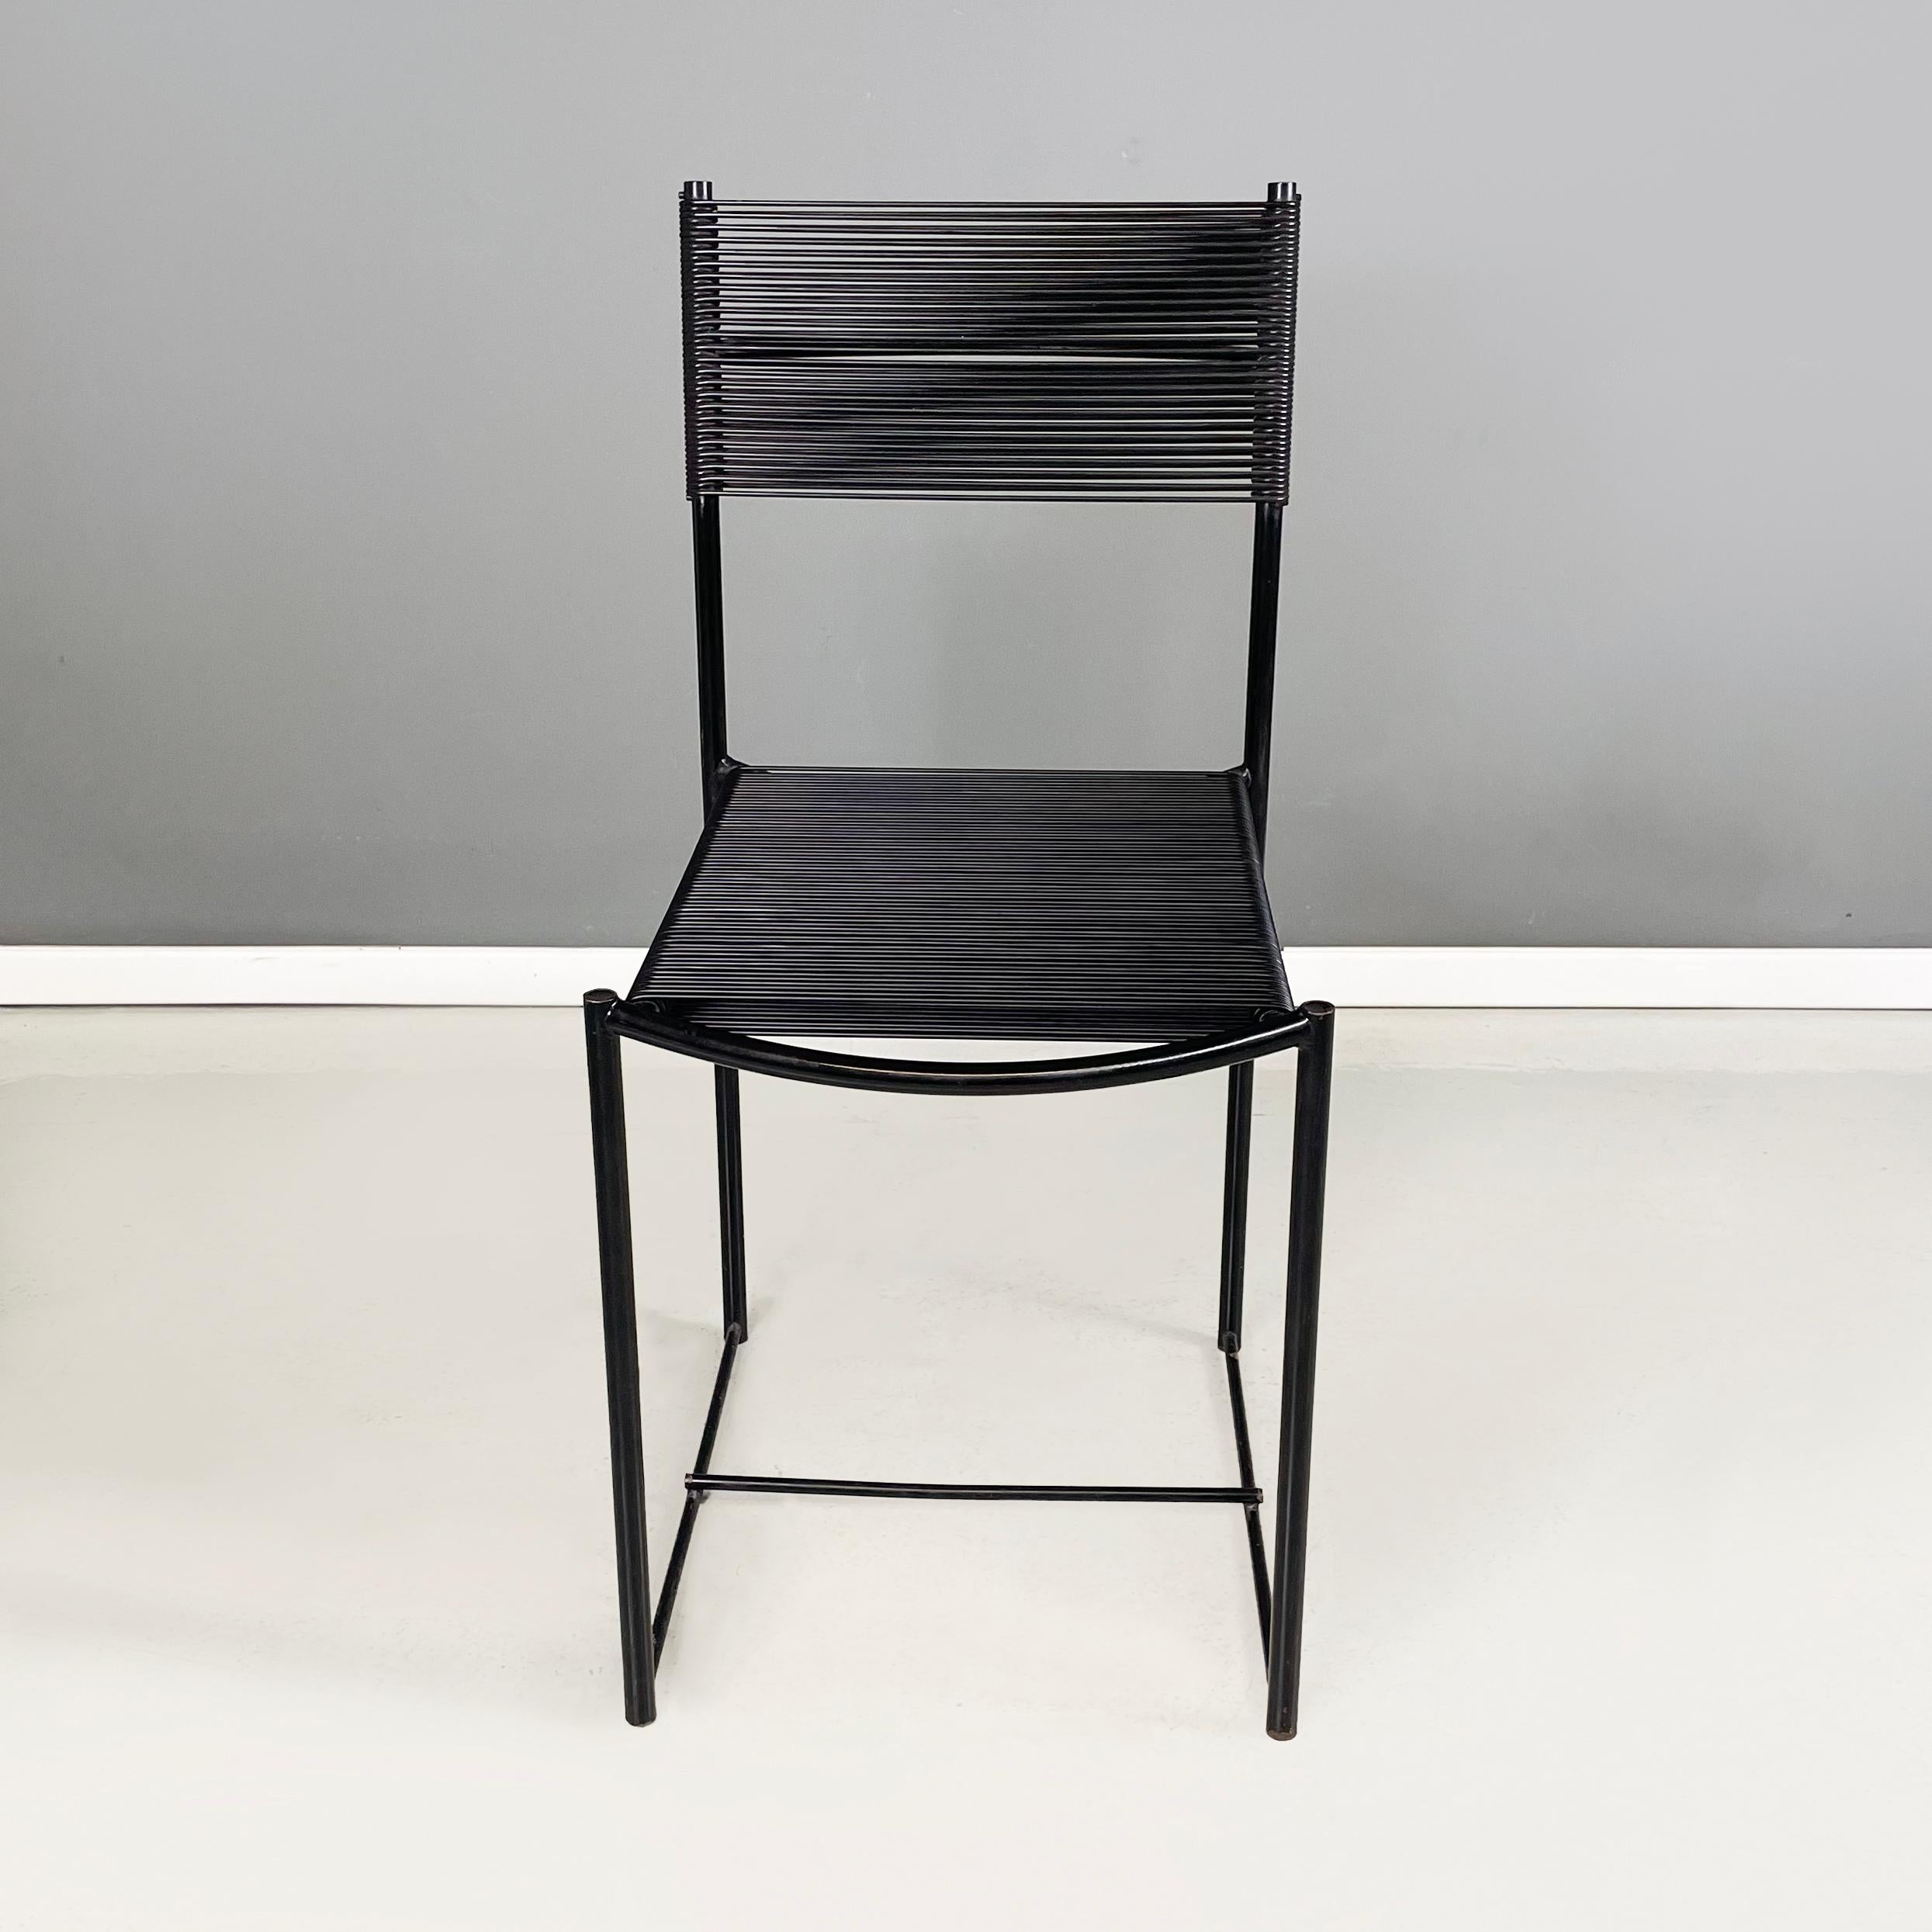 Chaise moderne italienne noire Spaghetti par Giandomenico Belotti pour Alias, années 1980
Président mod. Spaghetti  avec assise et dossier rectangulaires et élastiques en fils de scooby noirs. La structure est en métal peint en noir avec une poignée